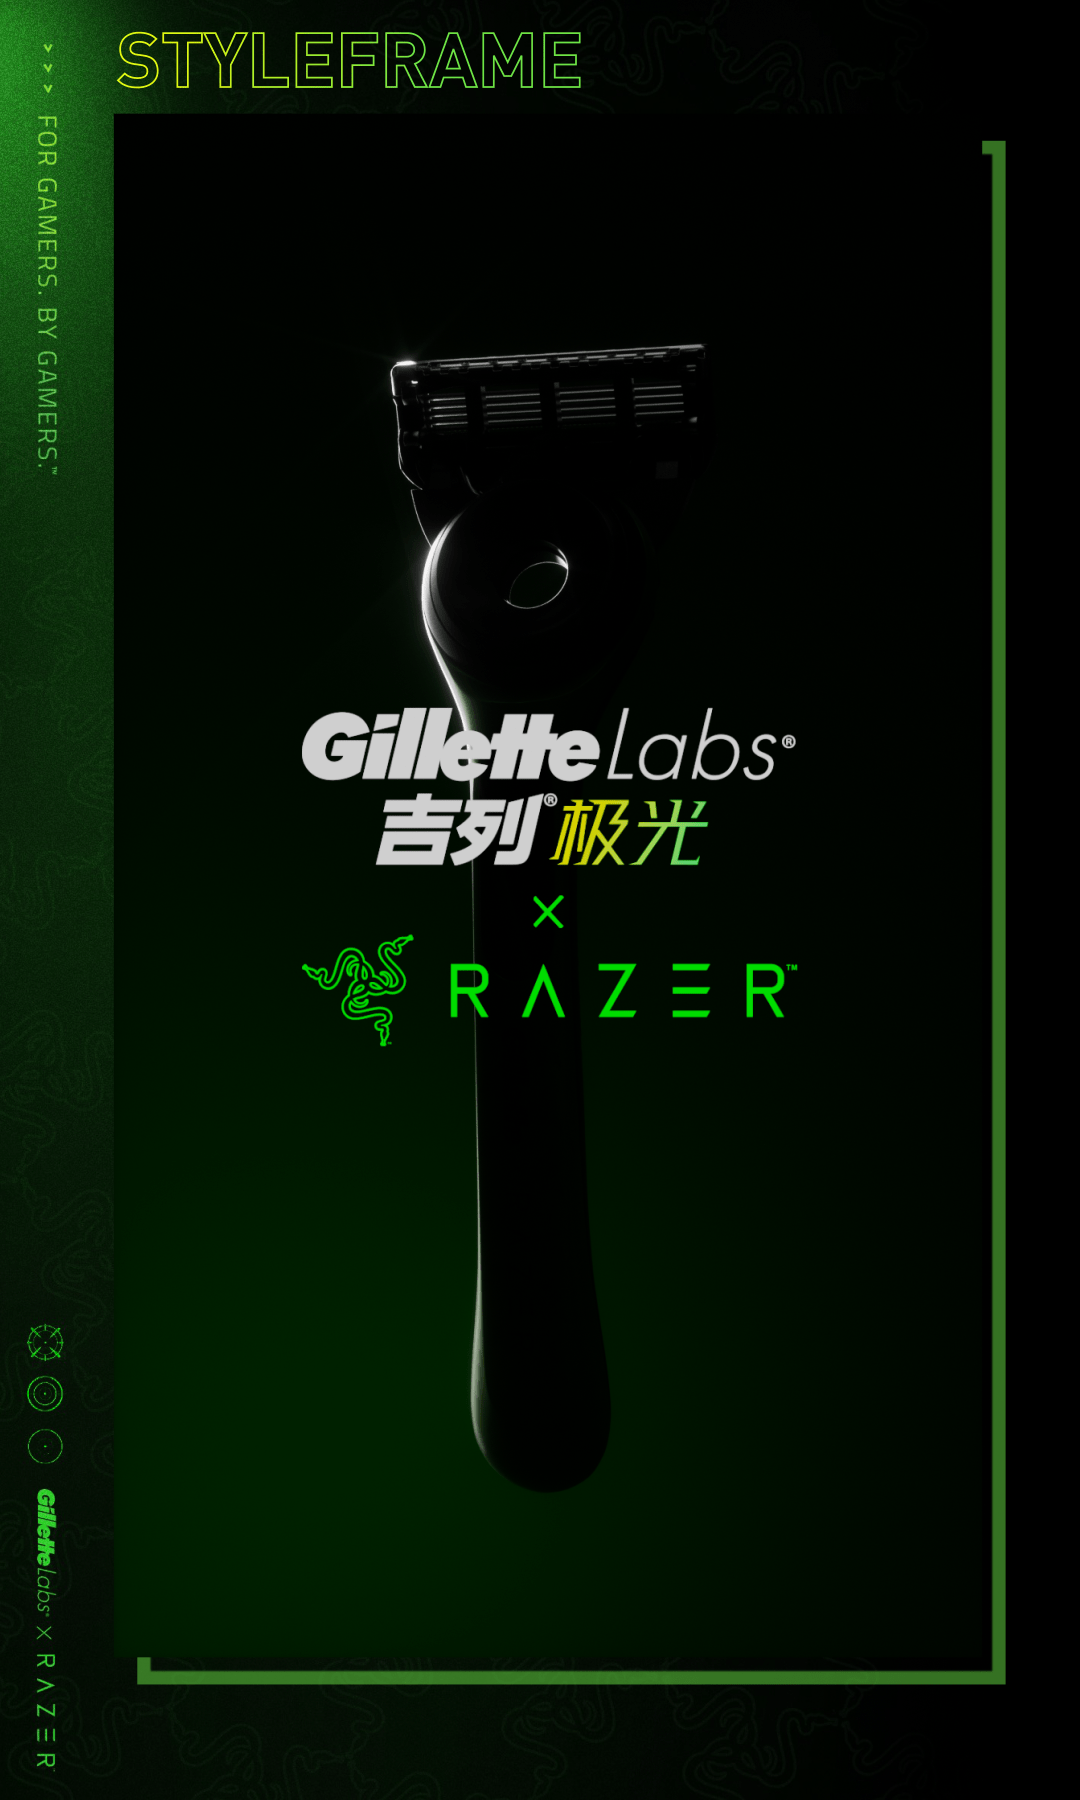 GILLETTE motion motiondesign animation  Advertising  octane GIlletteLabs razer 3D